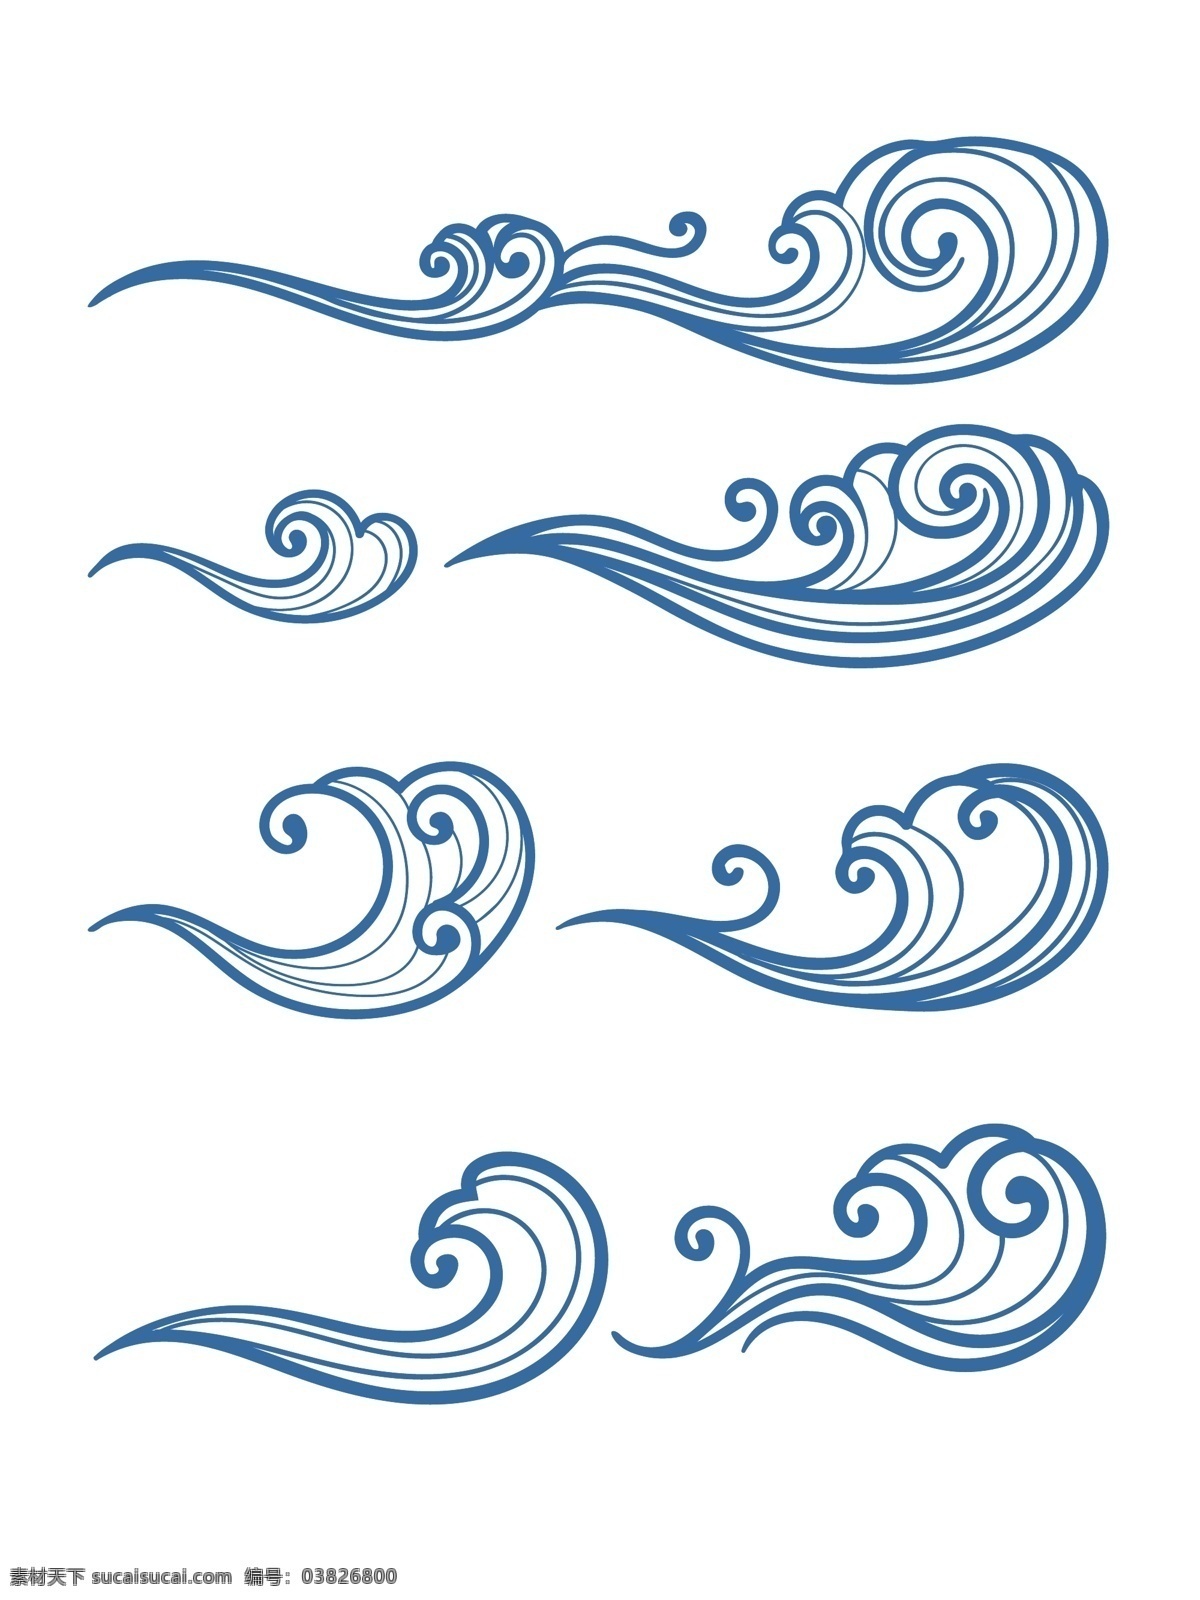 海浪素材 海洋 海浪 波浪 浪花 海洋风景 海水 海 爱琴海 海边 浪花装饰 波浪壁 蓝色海洋 蓝色海洋风景 原创素材 矢量图层